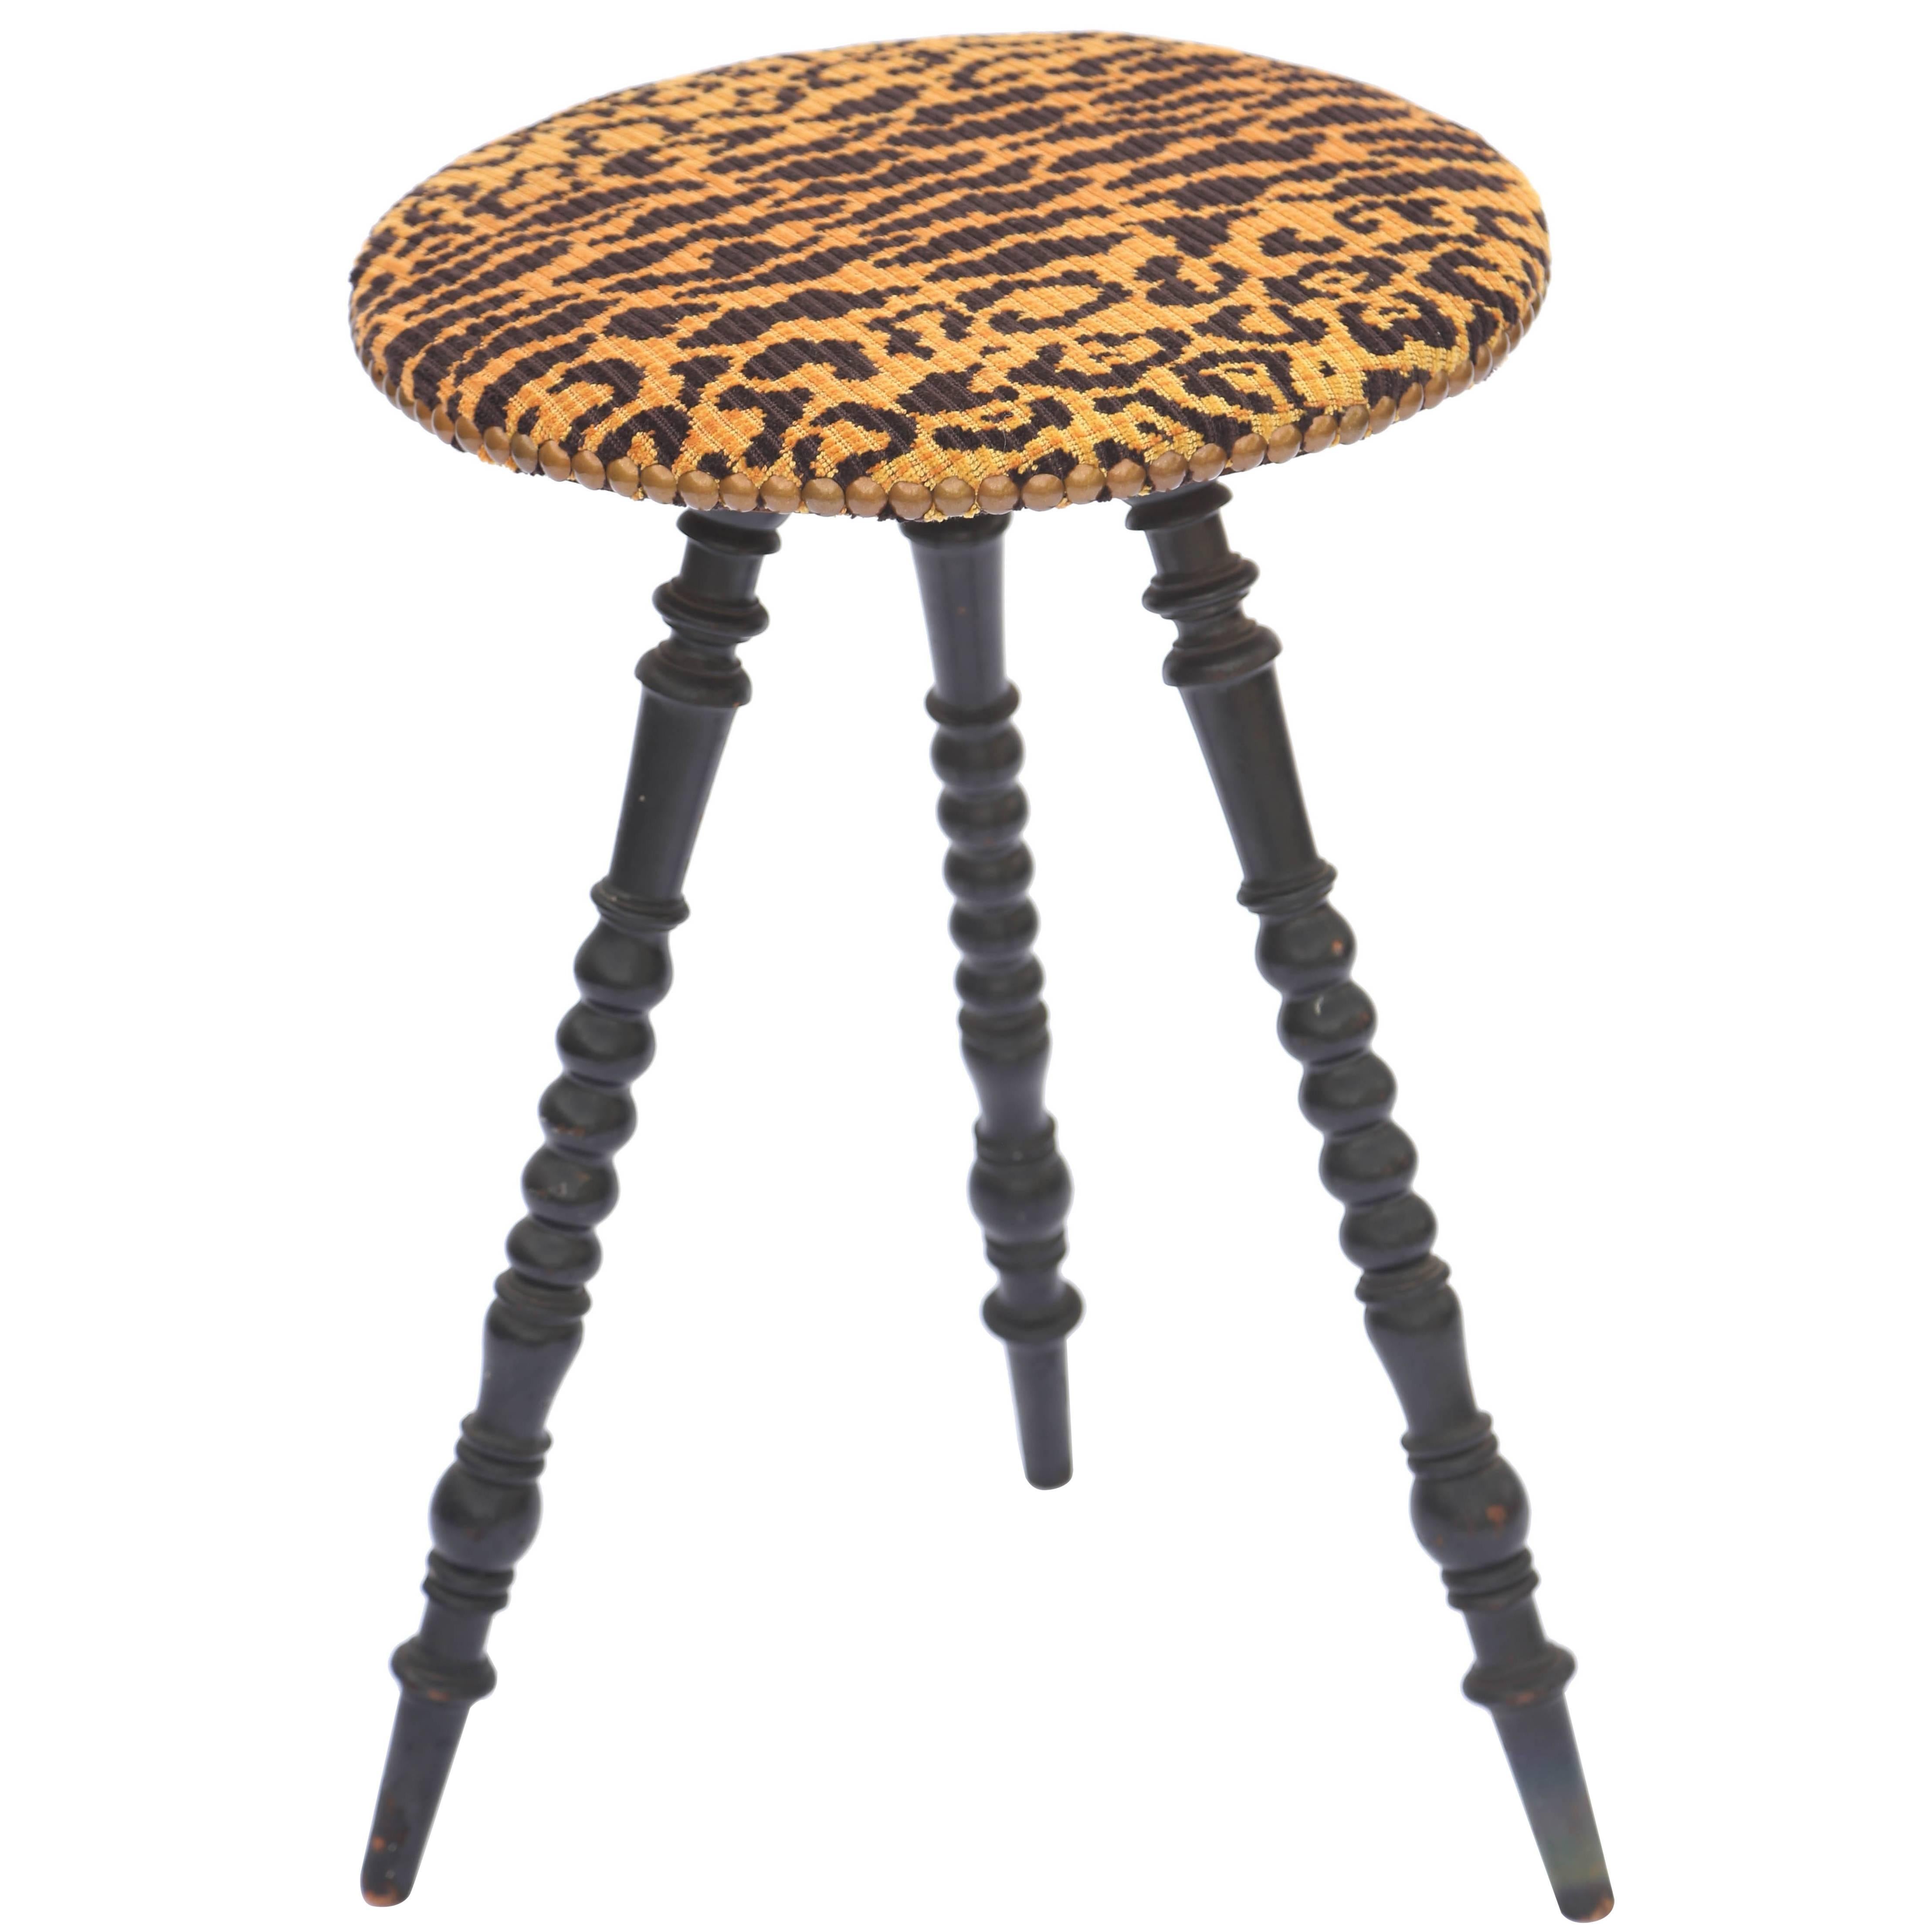 Table tripode victorienne à pieds tournés avec plateau rond tapissé en léopard